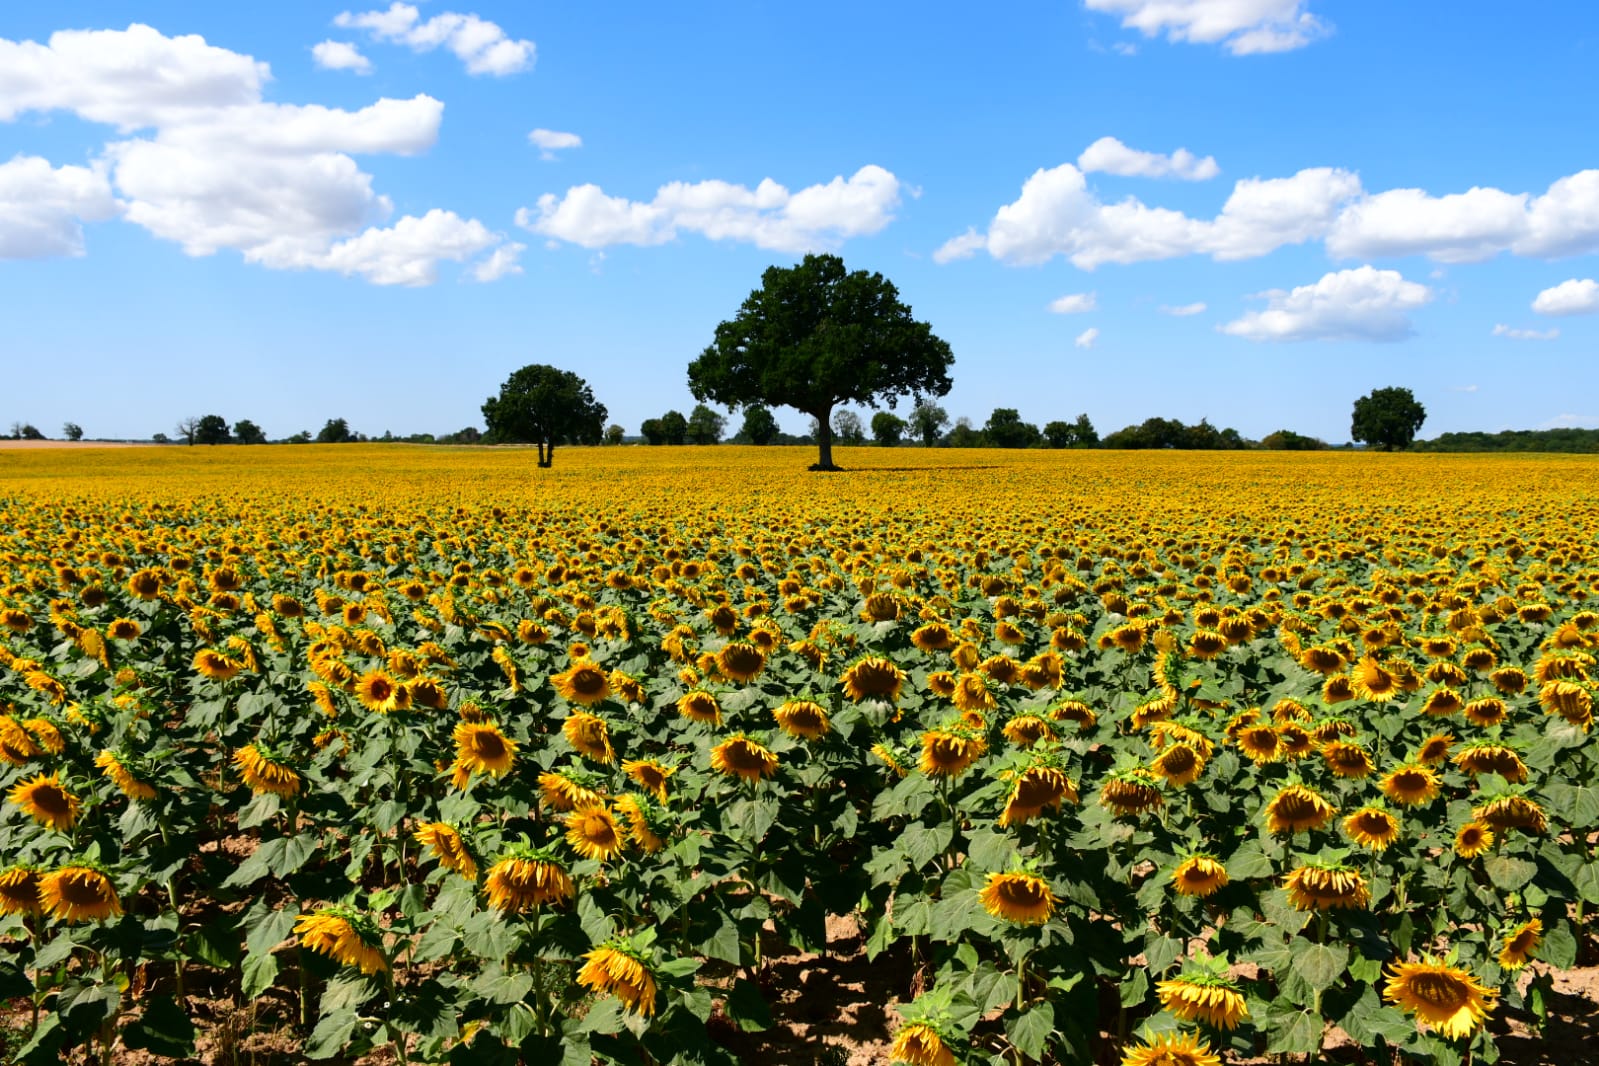 Mont et Marré, fields of sunflowers